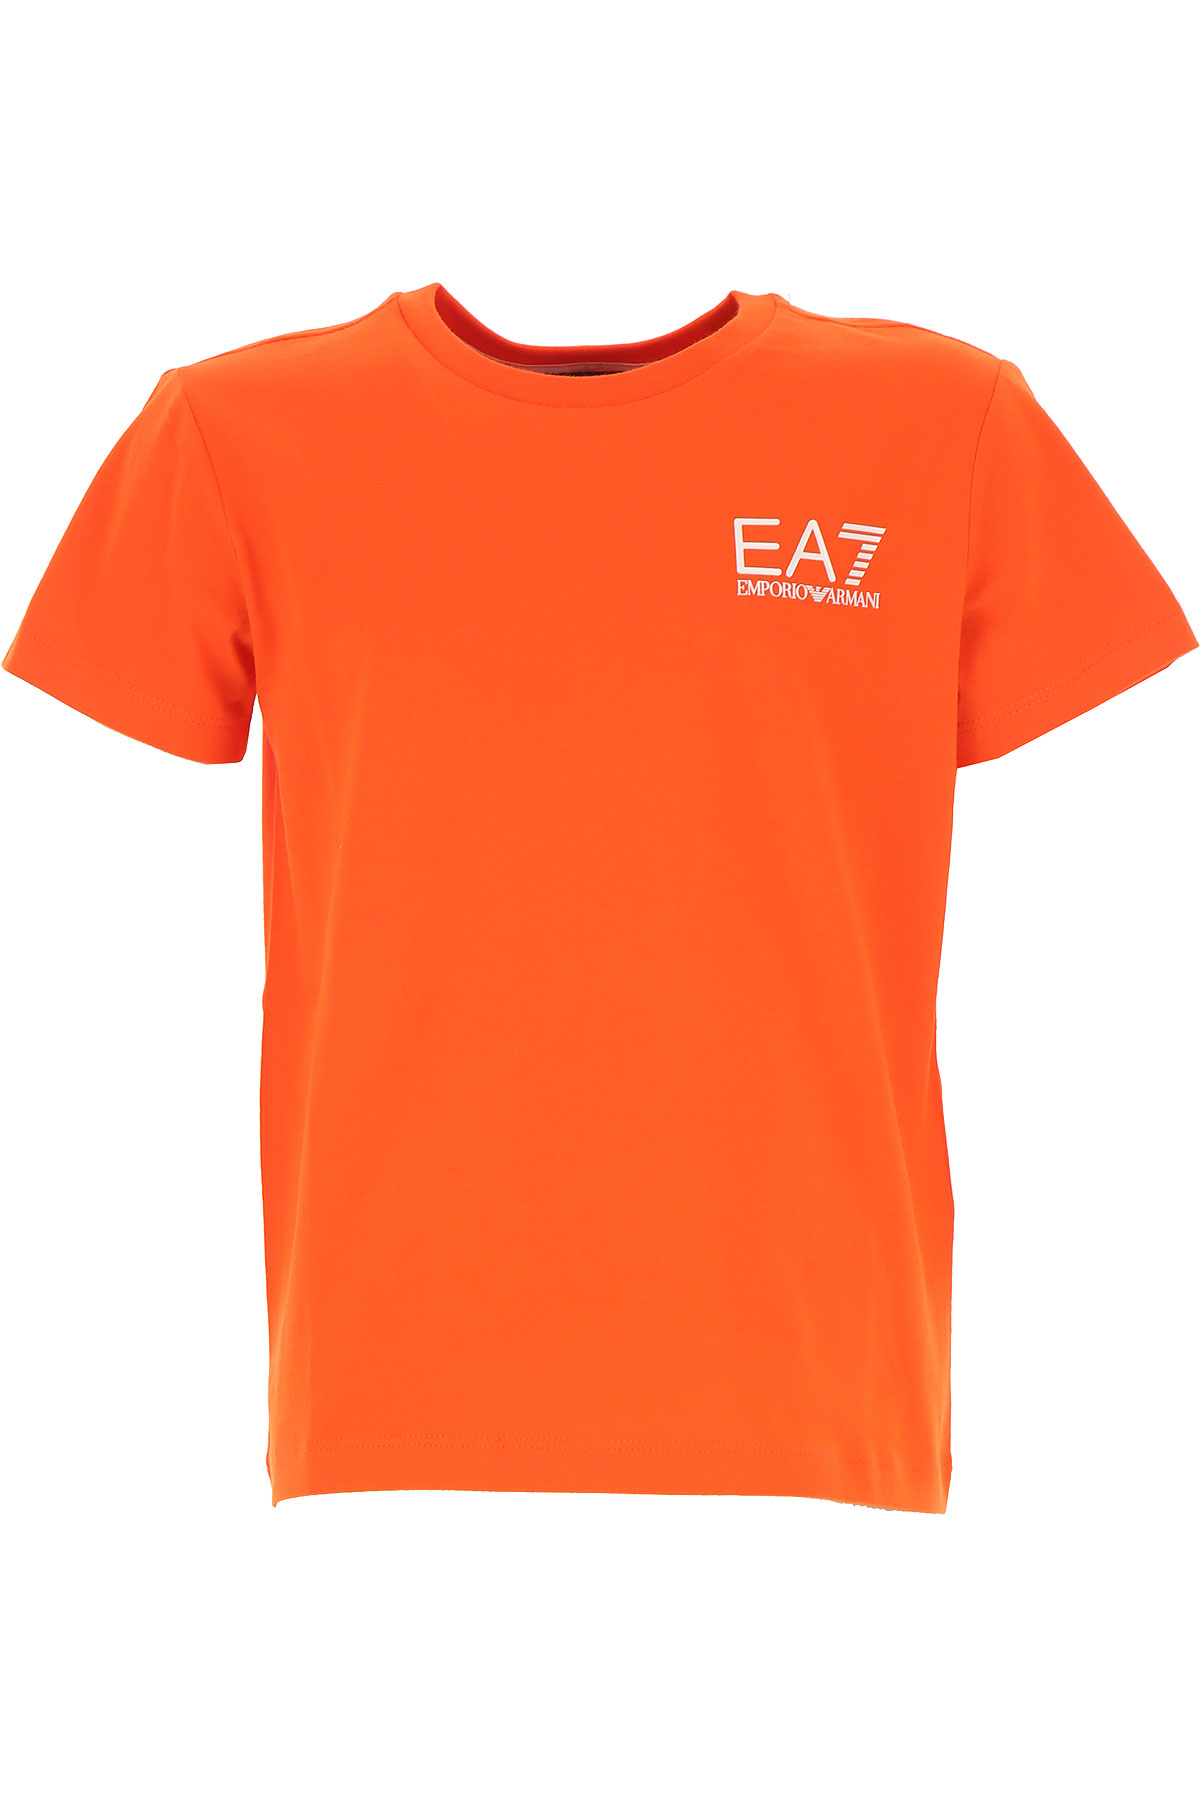 Emporio Armani Kinder T-Shirt für Jungen Günstig im Outlet Sale, Orange, Baumwolle, 2017, 12Y 6Y